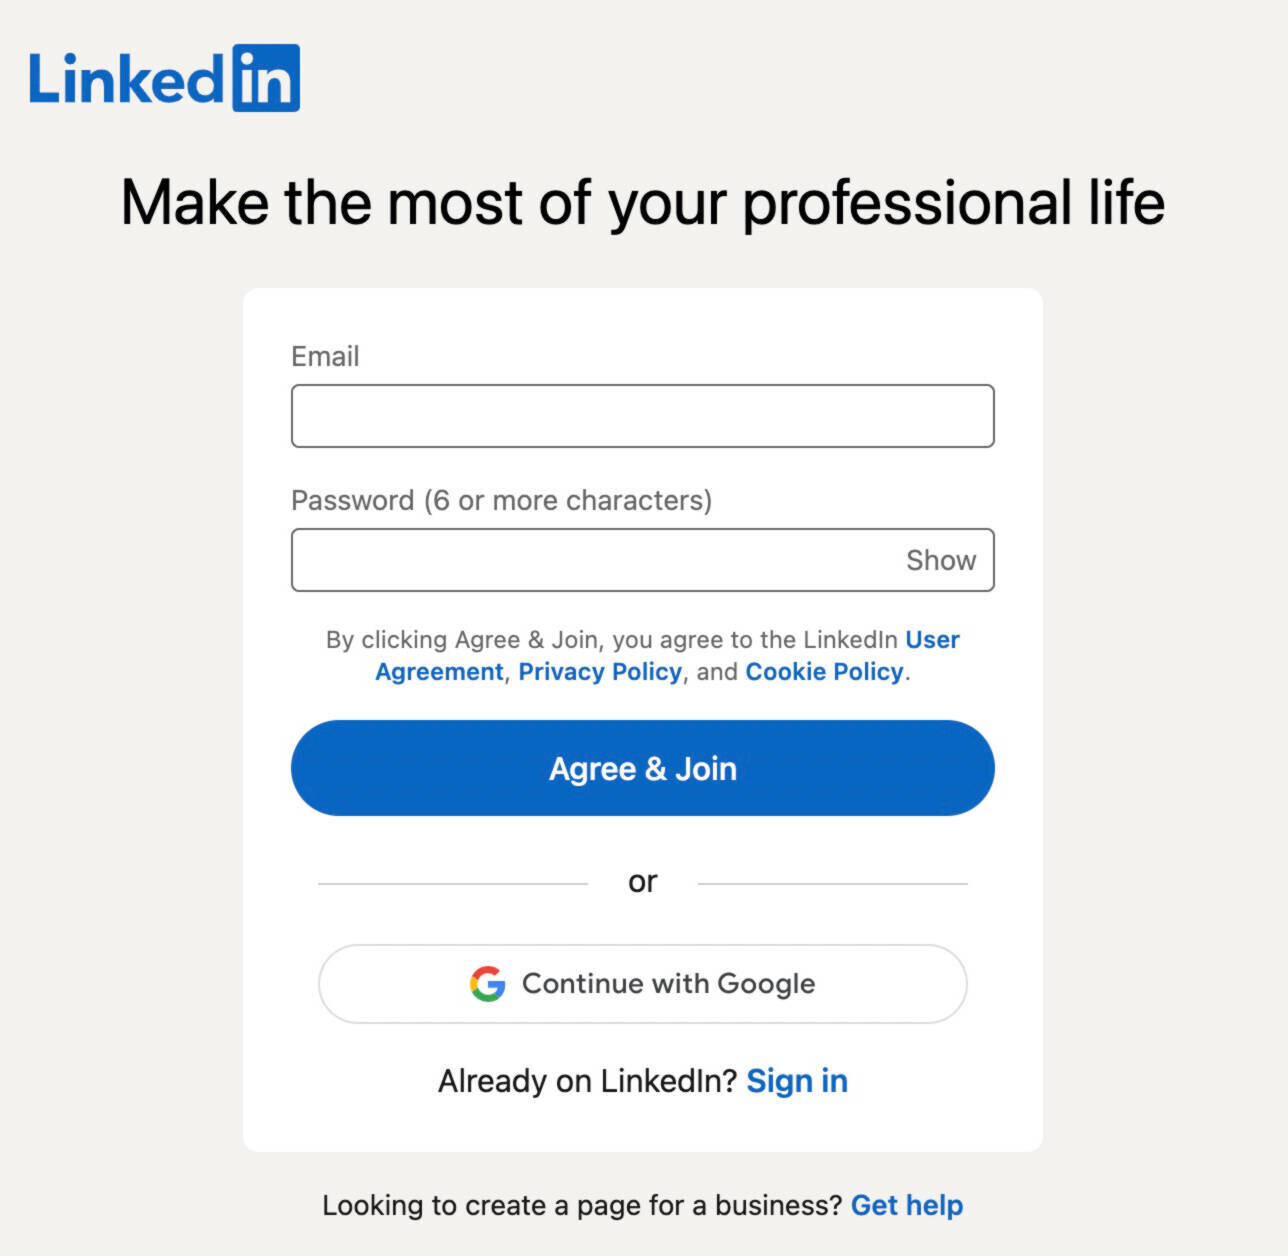 LinkedIn Premium's log-in or sign up form